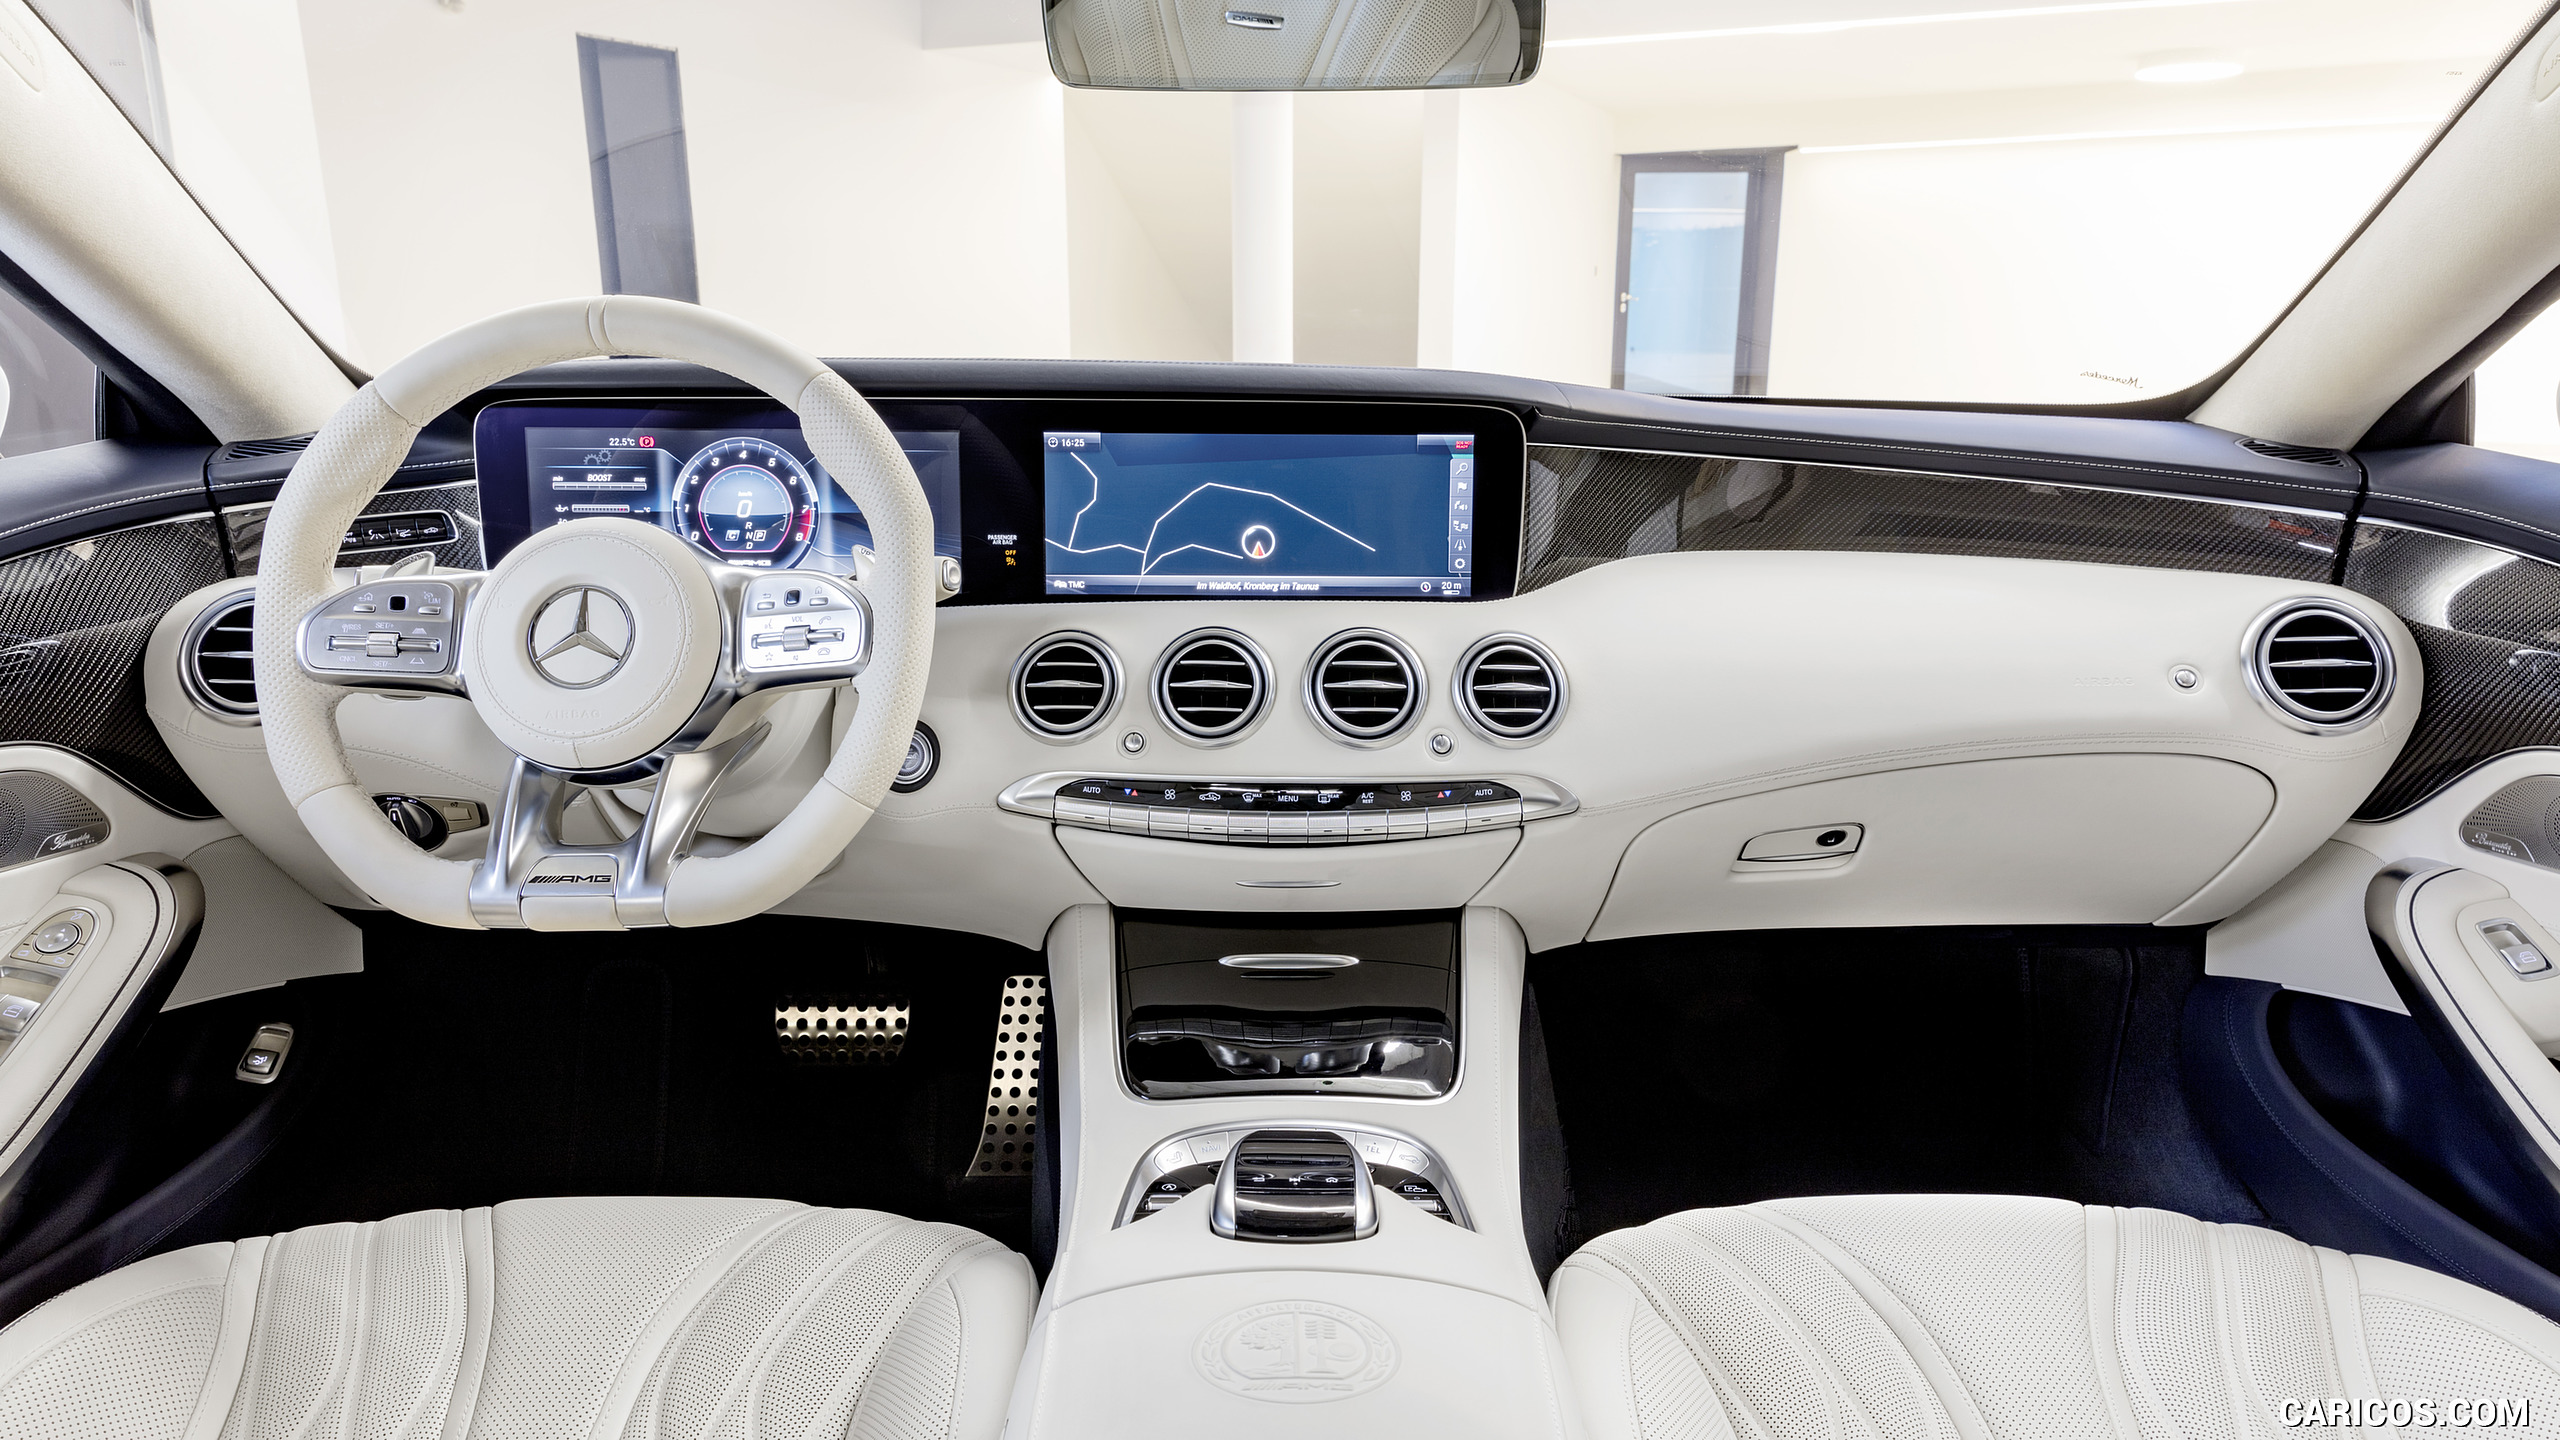 2018 Mercedes-AMG S63 Coupe 4MATIC+ (Color: Designo Diamond White) - Interior, Cockpit, #17 of 98